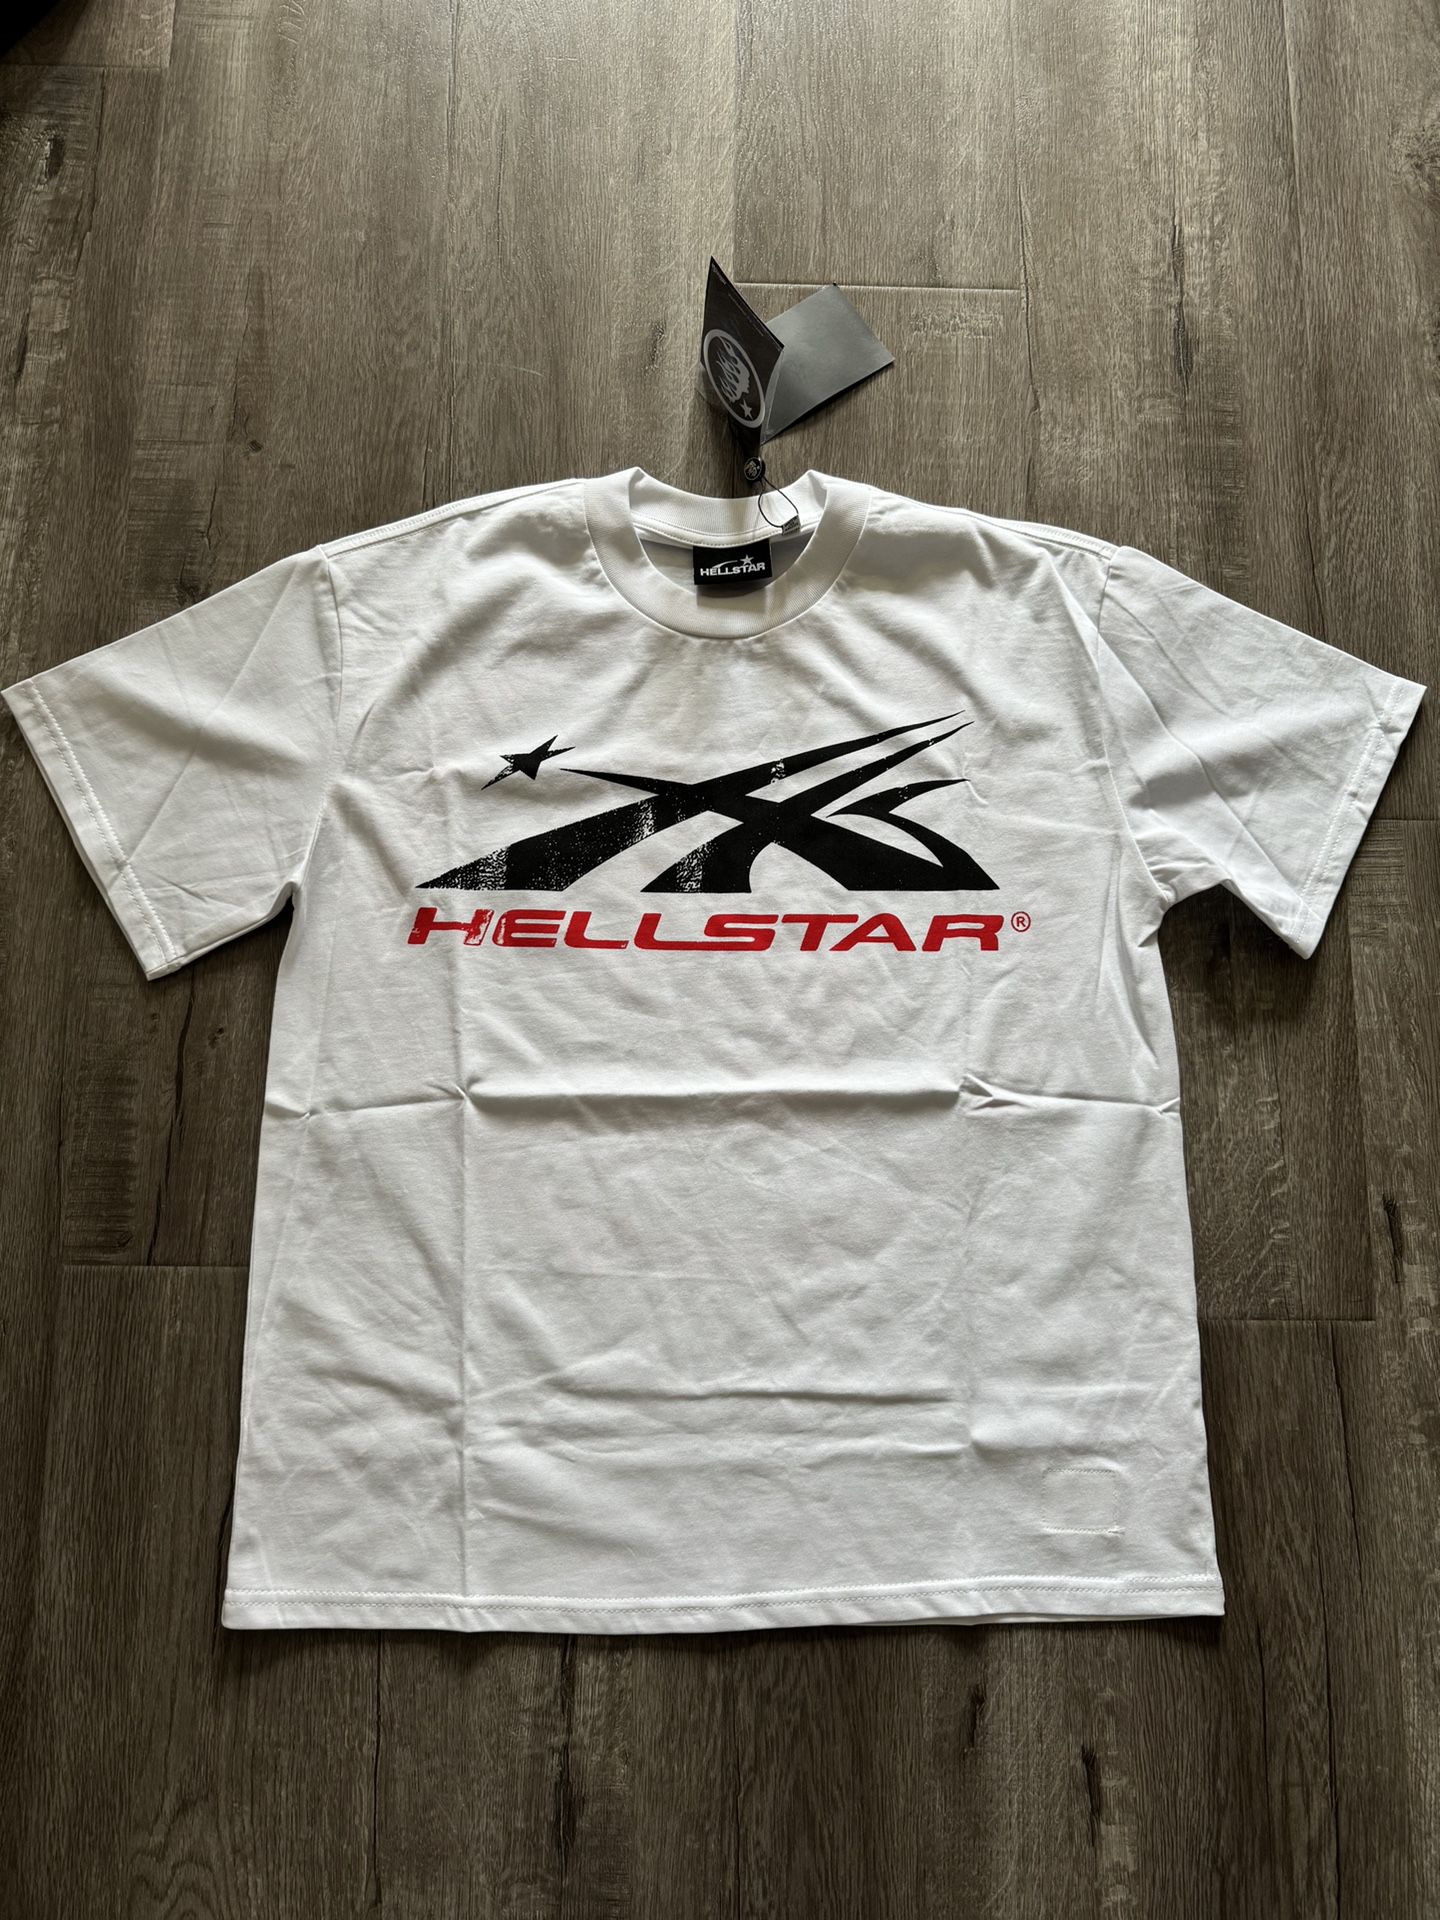 Hellstar Sport Logo tee (small)